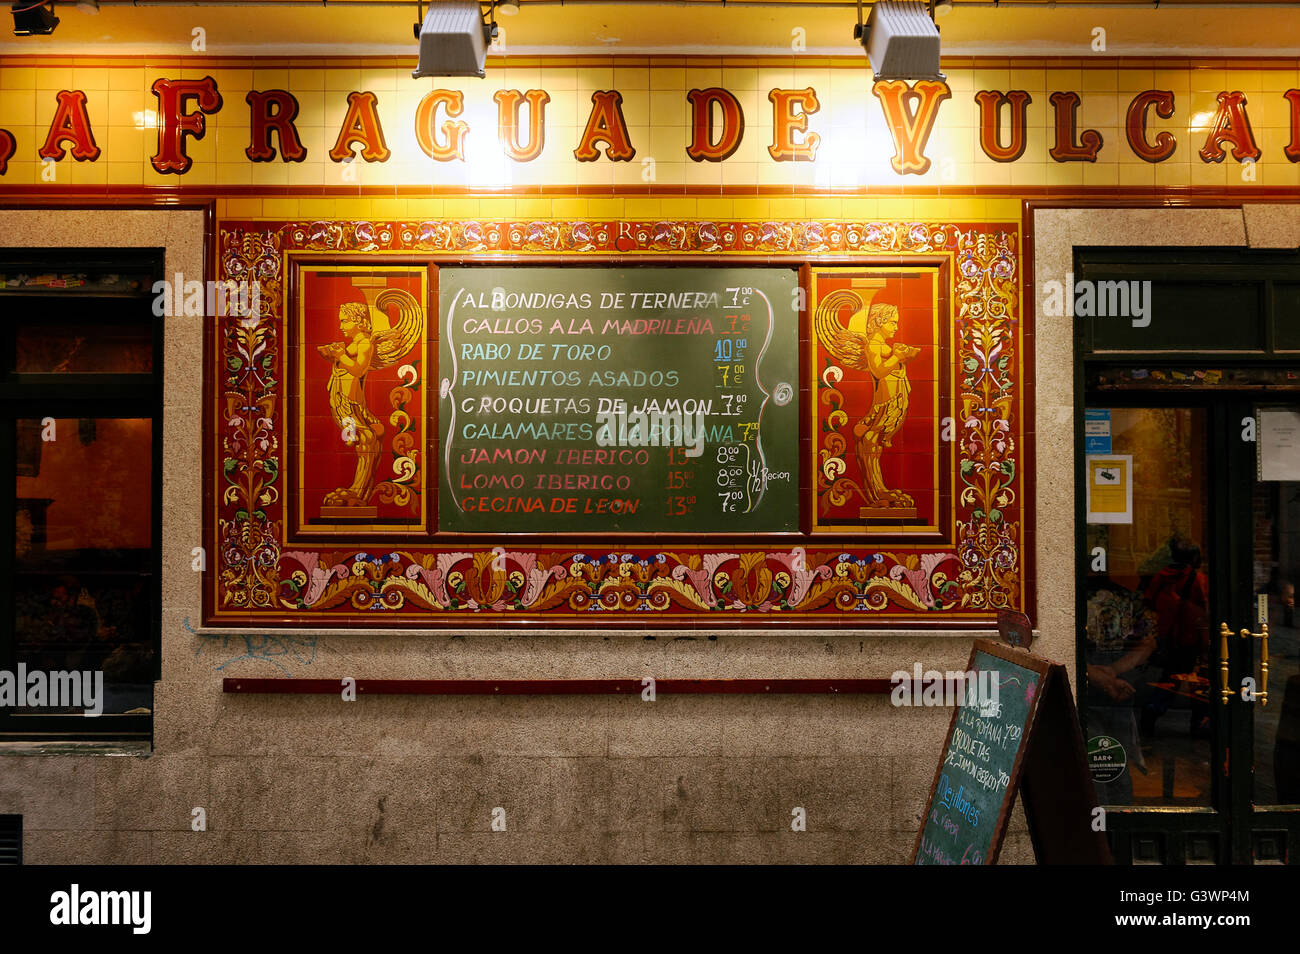 La Fragua de Vulcano restaurante con fachada de azulejos ornamentados y menú, Madrid, España Foto de stock